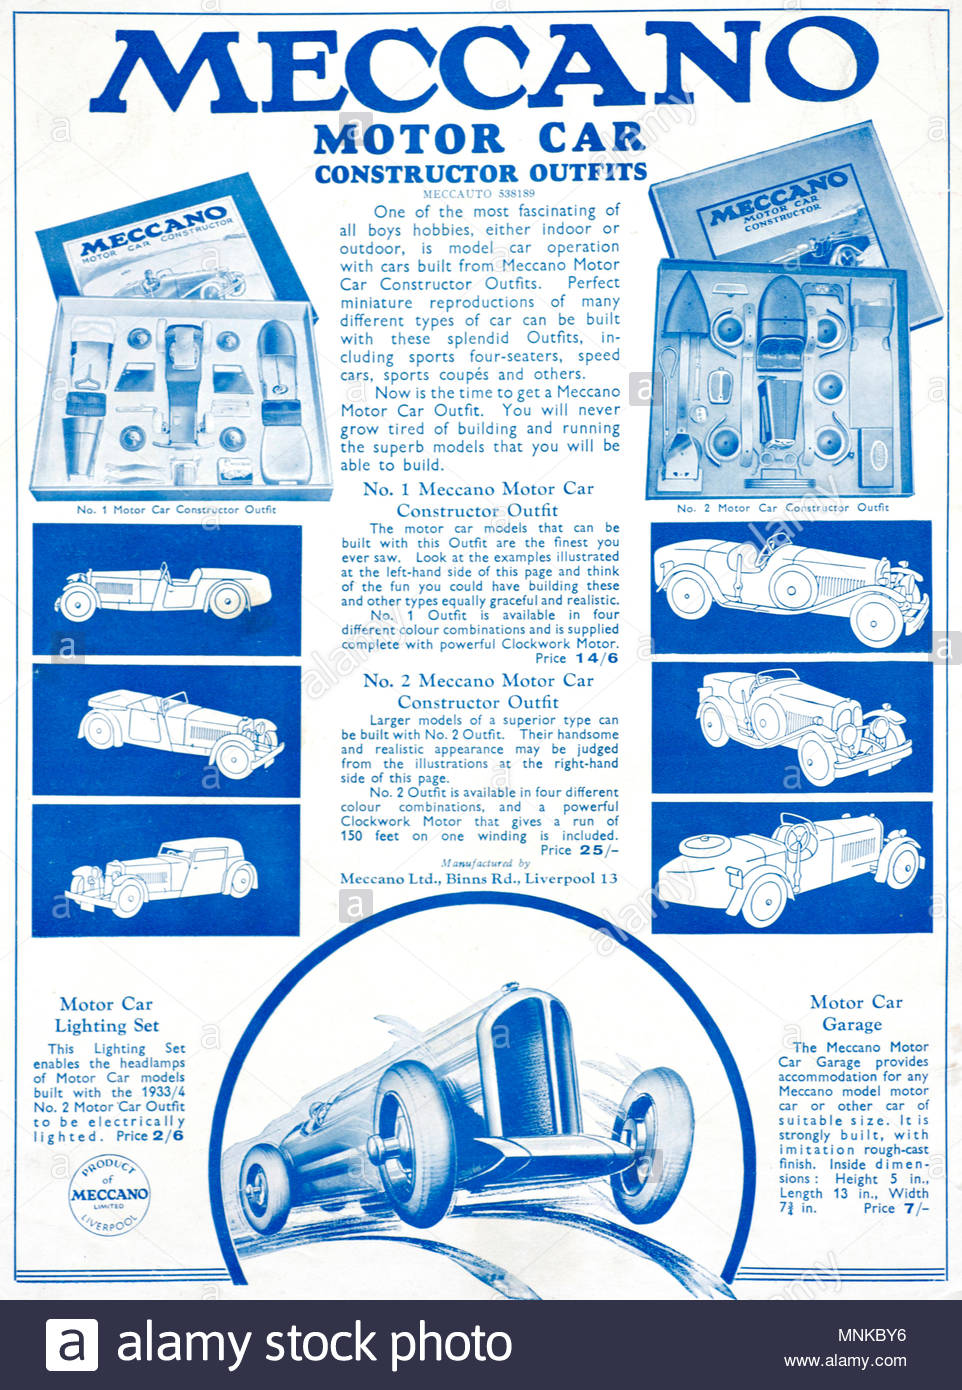 Meccano Automóvil constuctor trajes, vintage publicidad desde 1934 Foto de stock